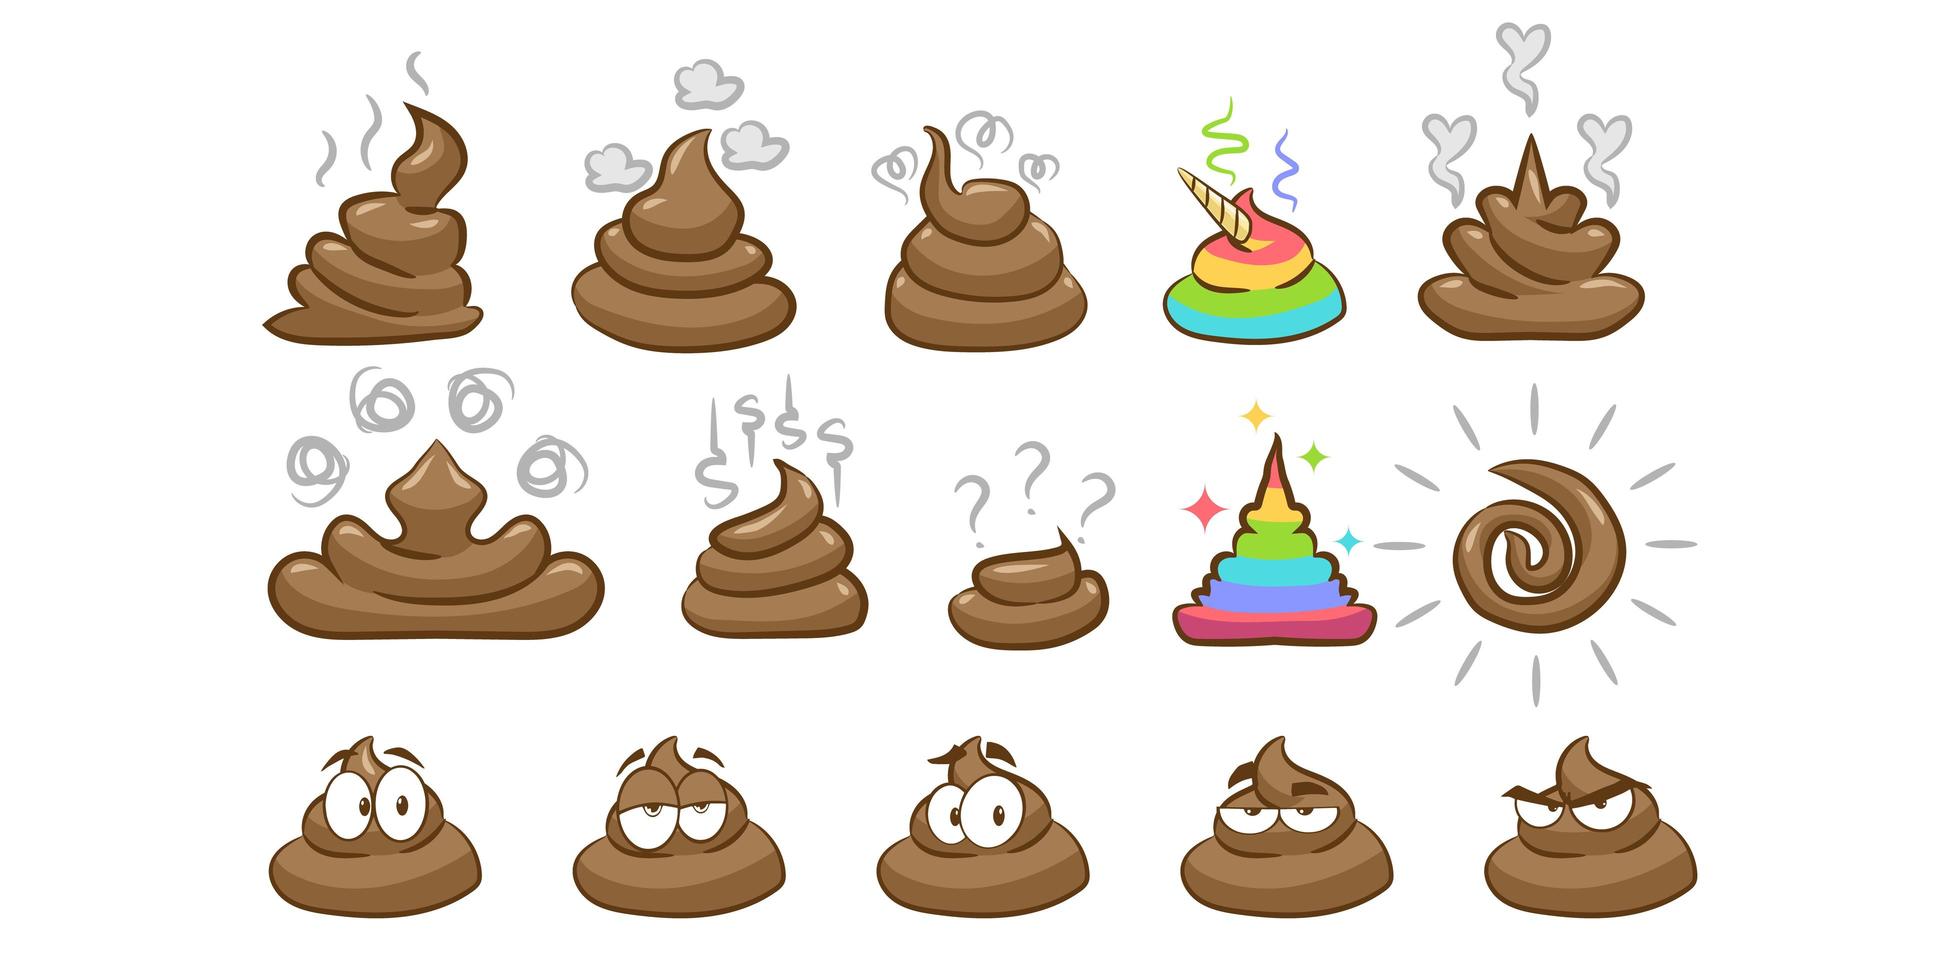 Billedillustration af poo emoji i forskellige former